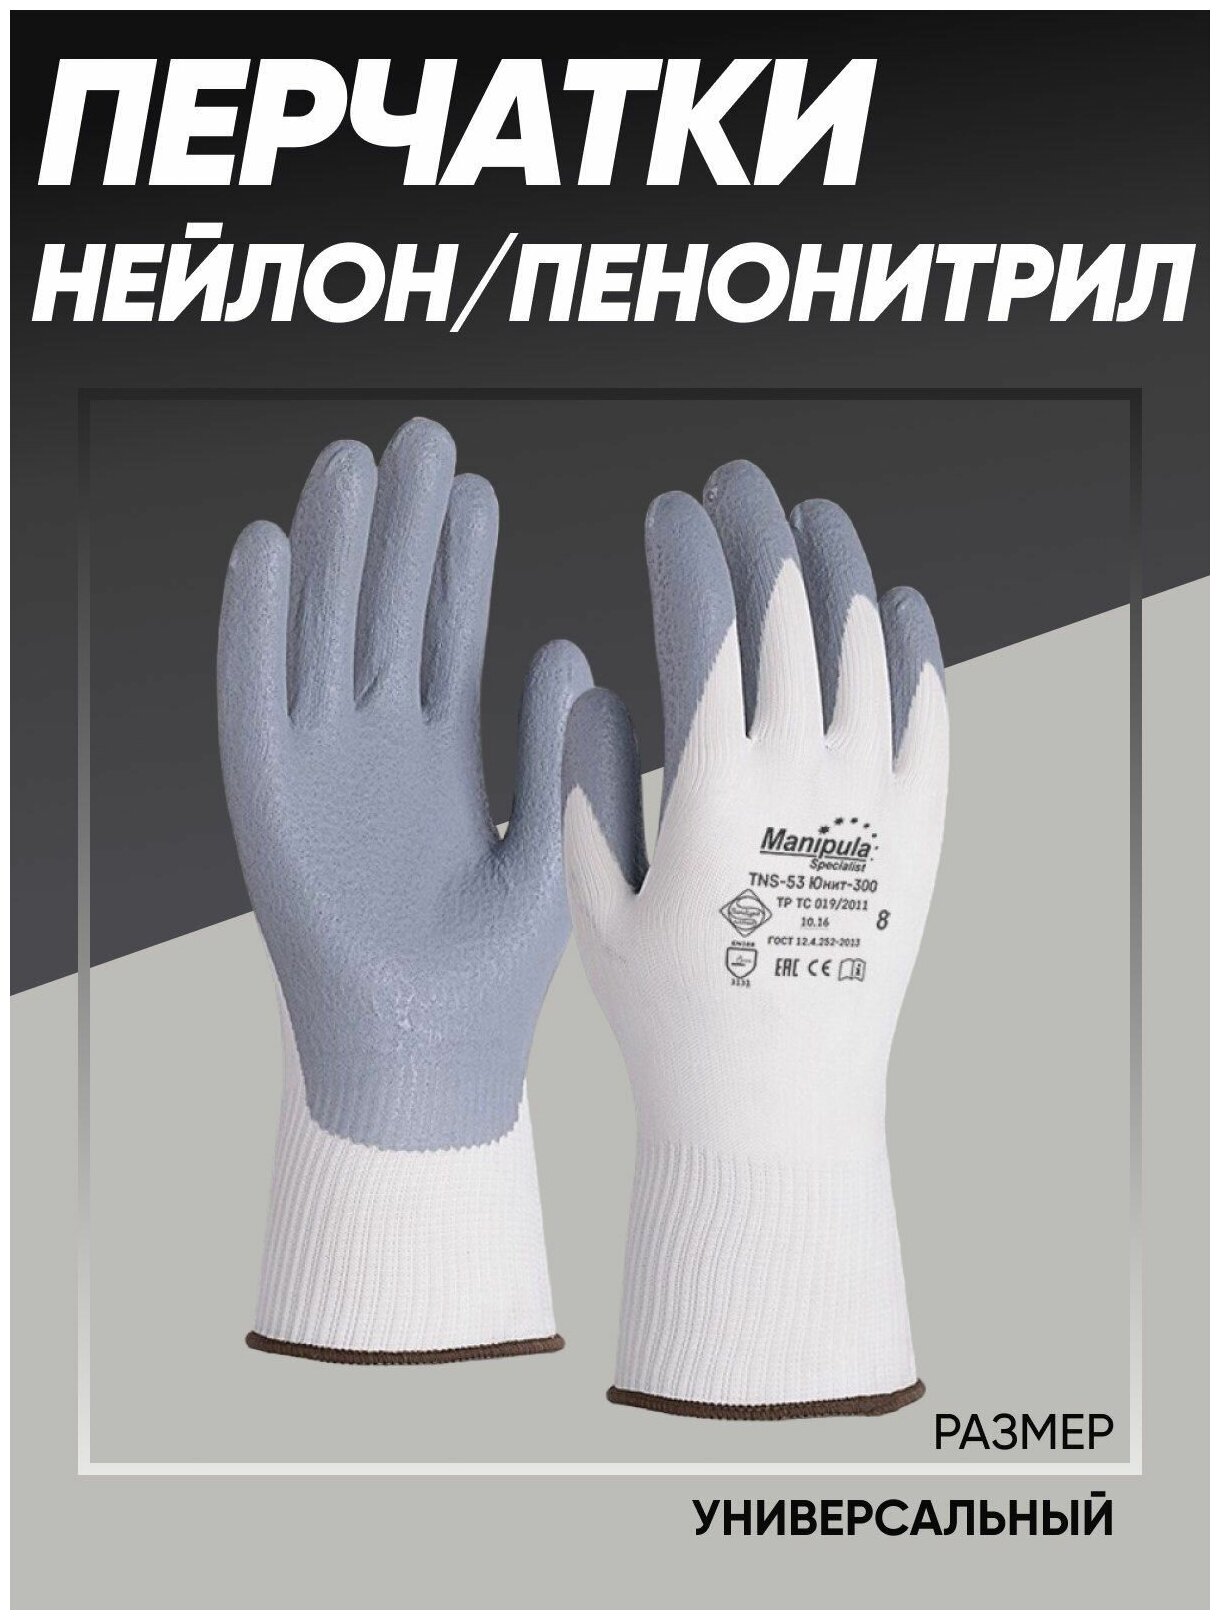 Перчатки Опторика Юнит-300, нейлон/пенонитрил